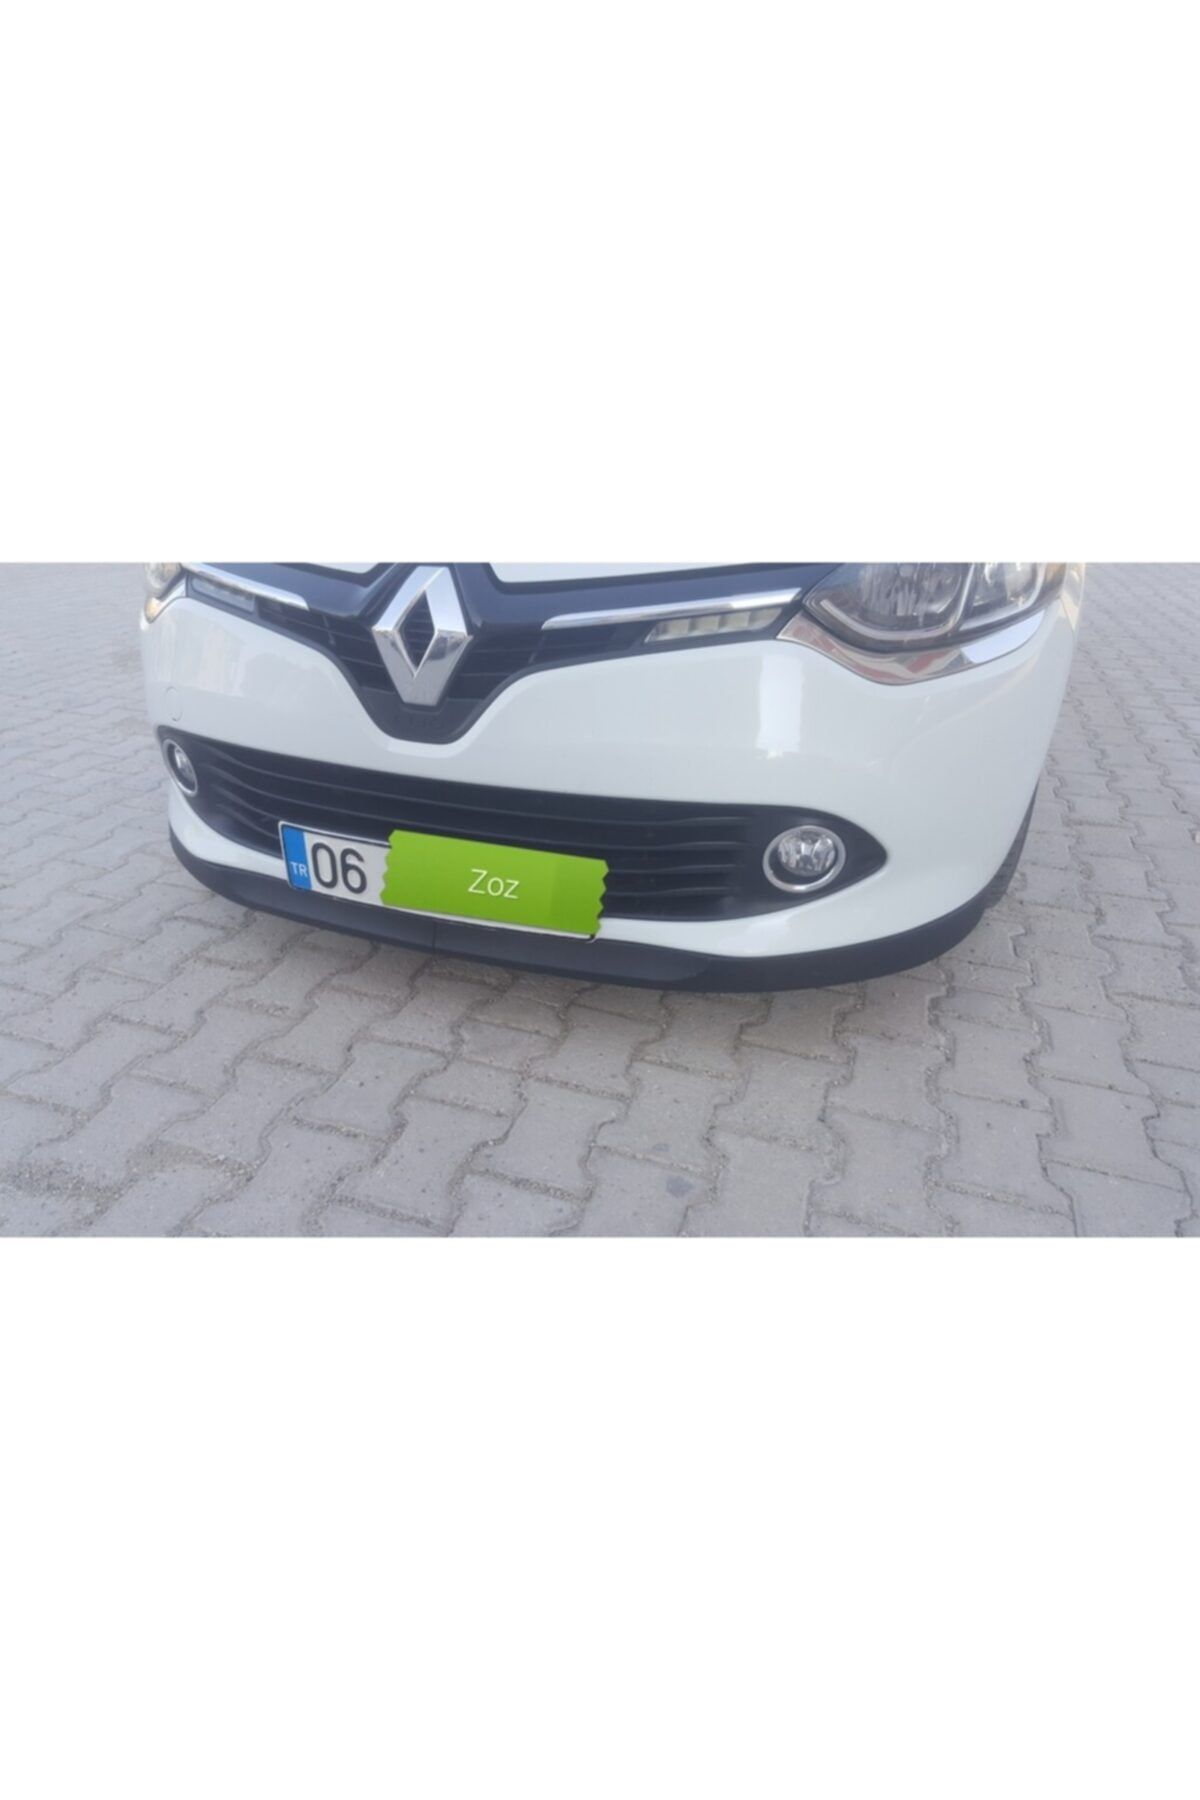 KOTA Renault Clio 4 Ön Tampon Spor Tuning Modifiye Ek